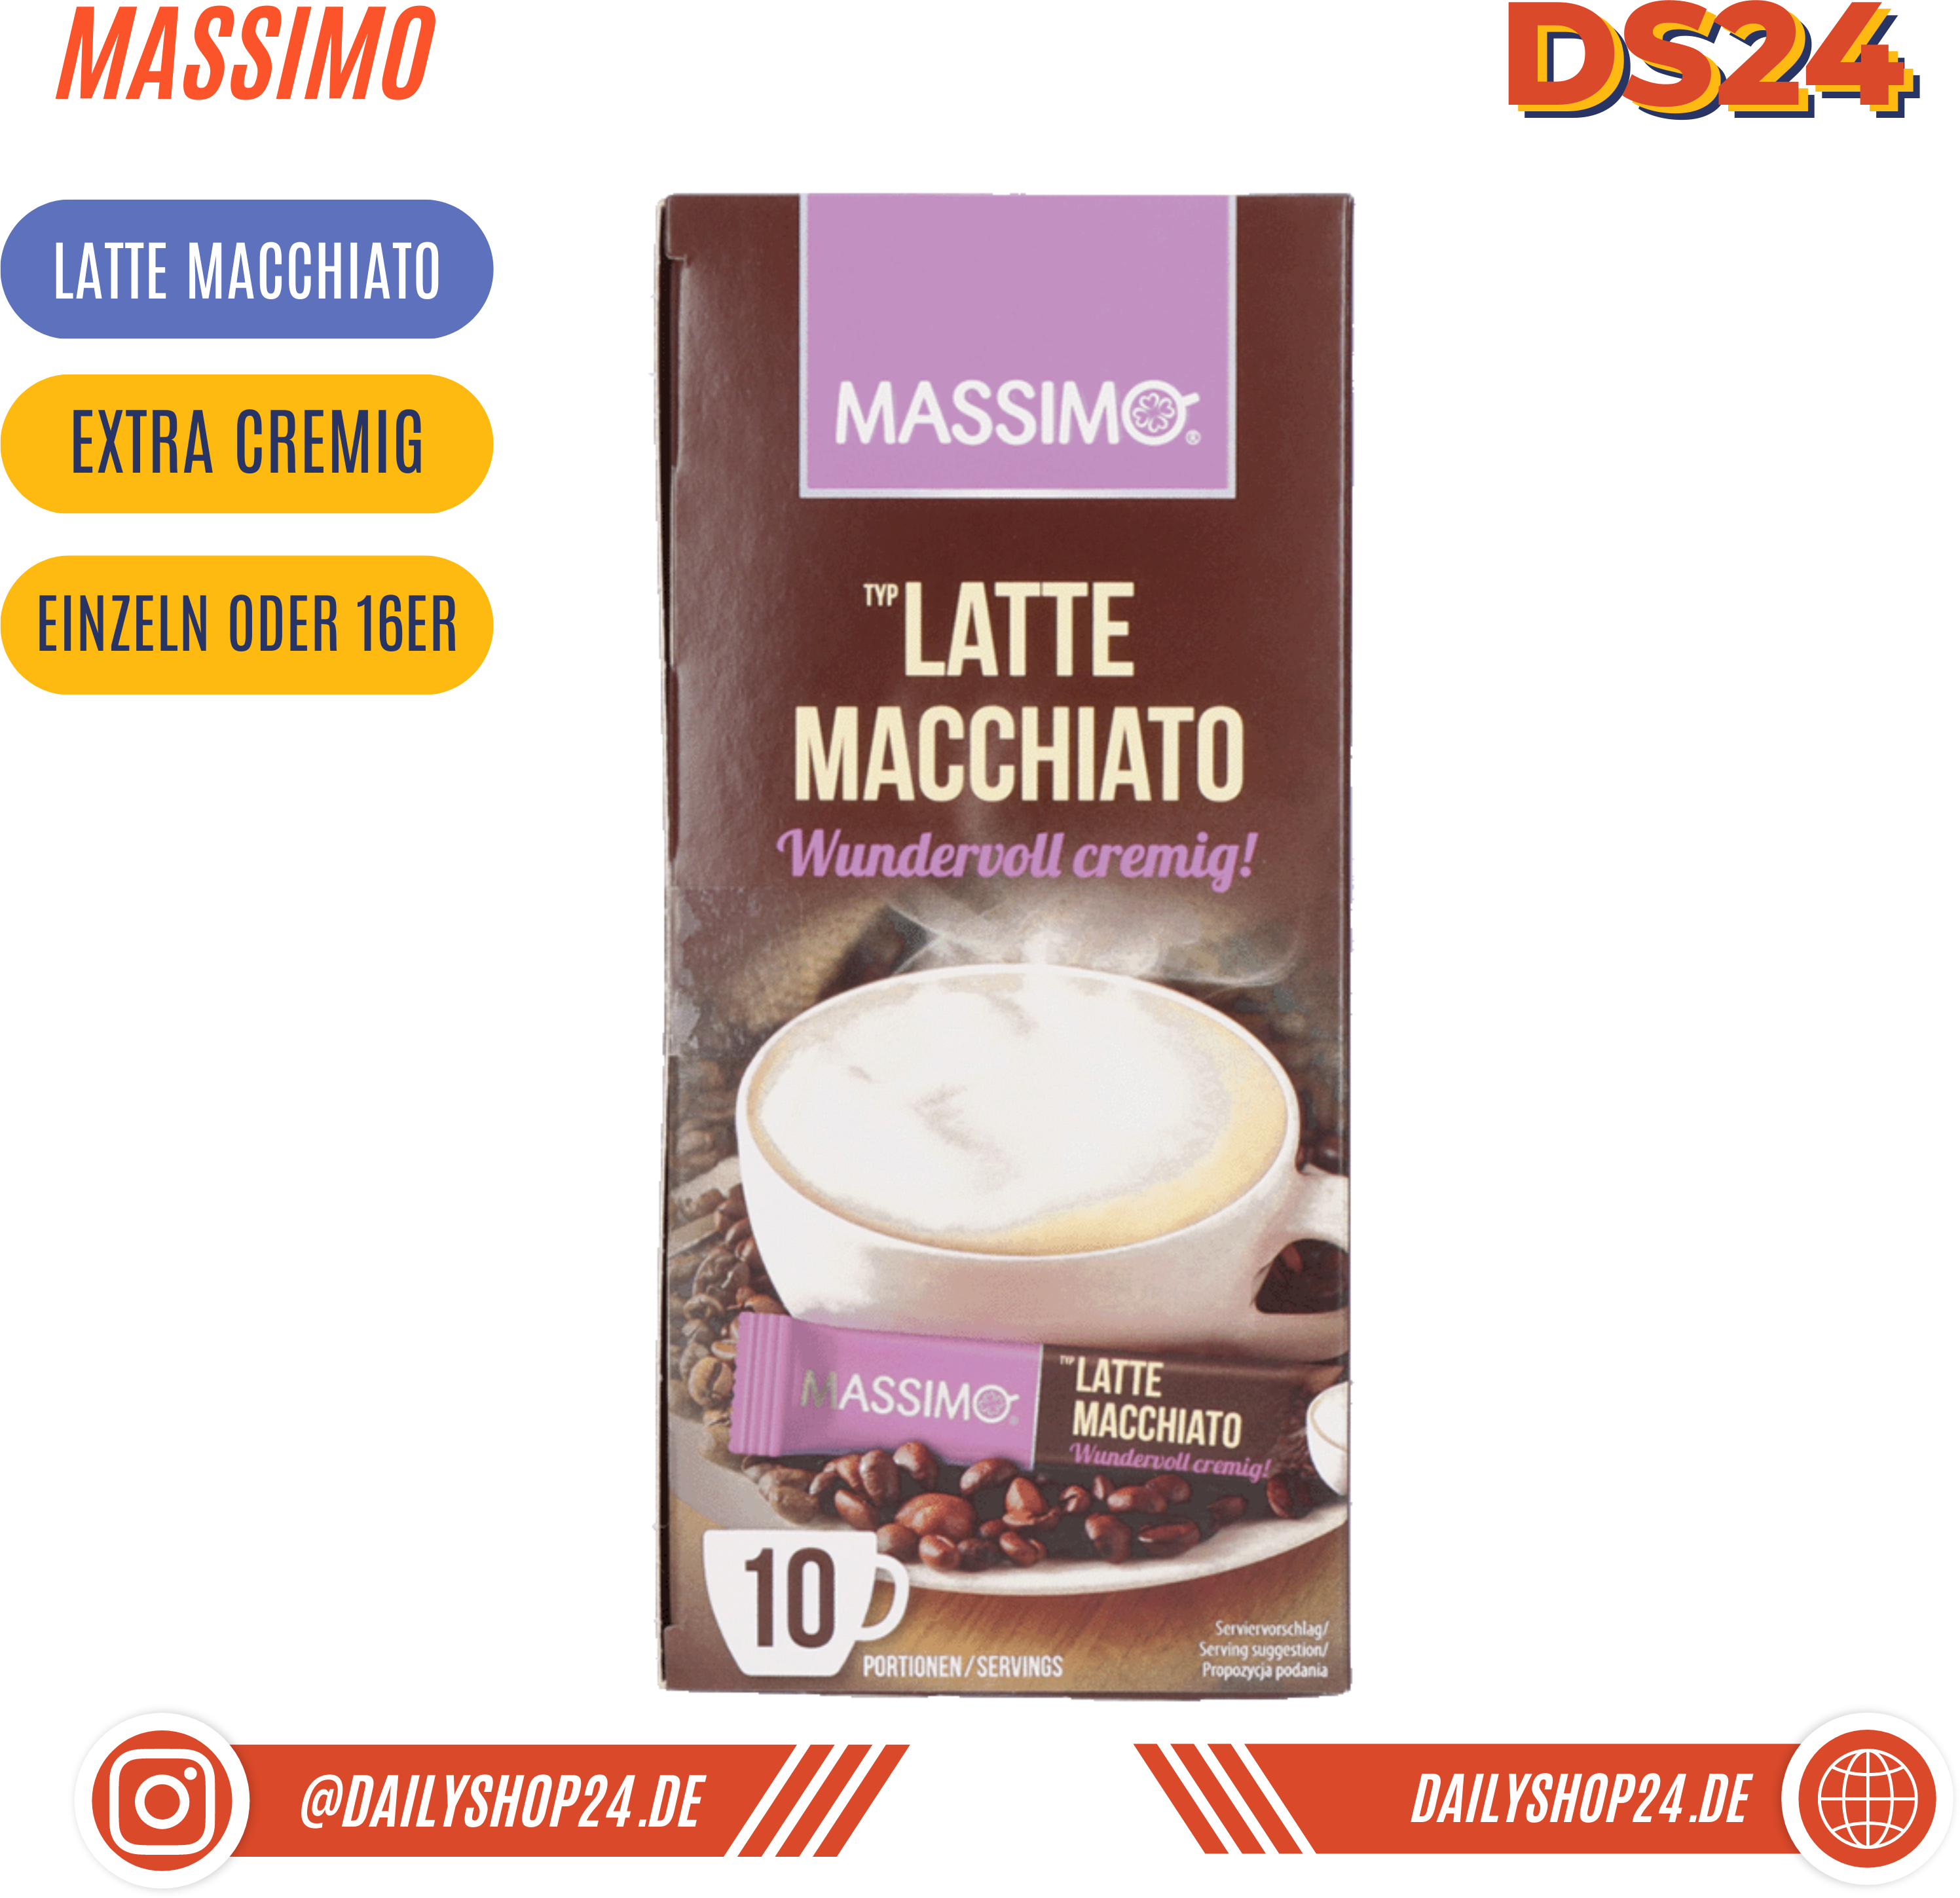 MASSIMO Kaffe Sticks - 1 Stück / Latte Macchiato